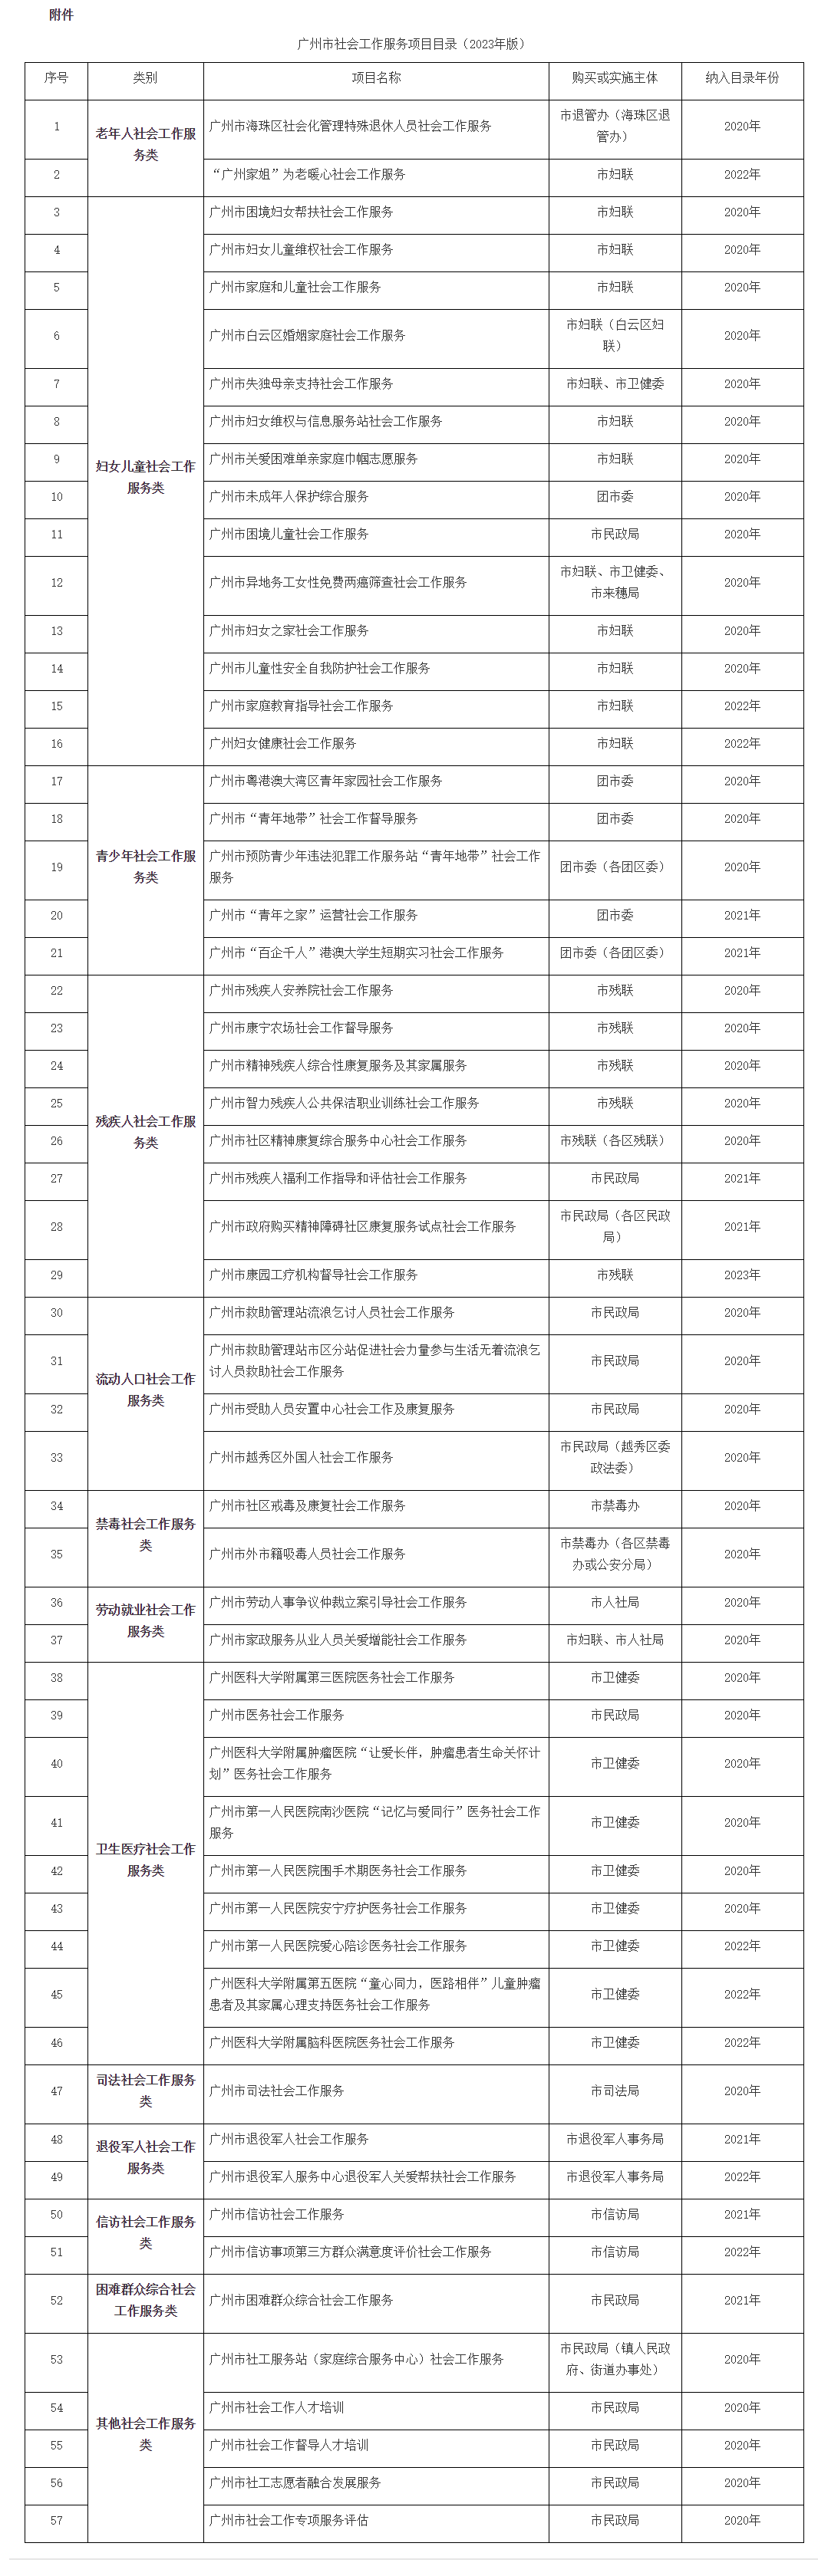 广州市民政局关于公布广州市社会工作服务项目目录（2023年版）的公告 - 广州市人民政府门户网站